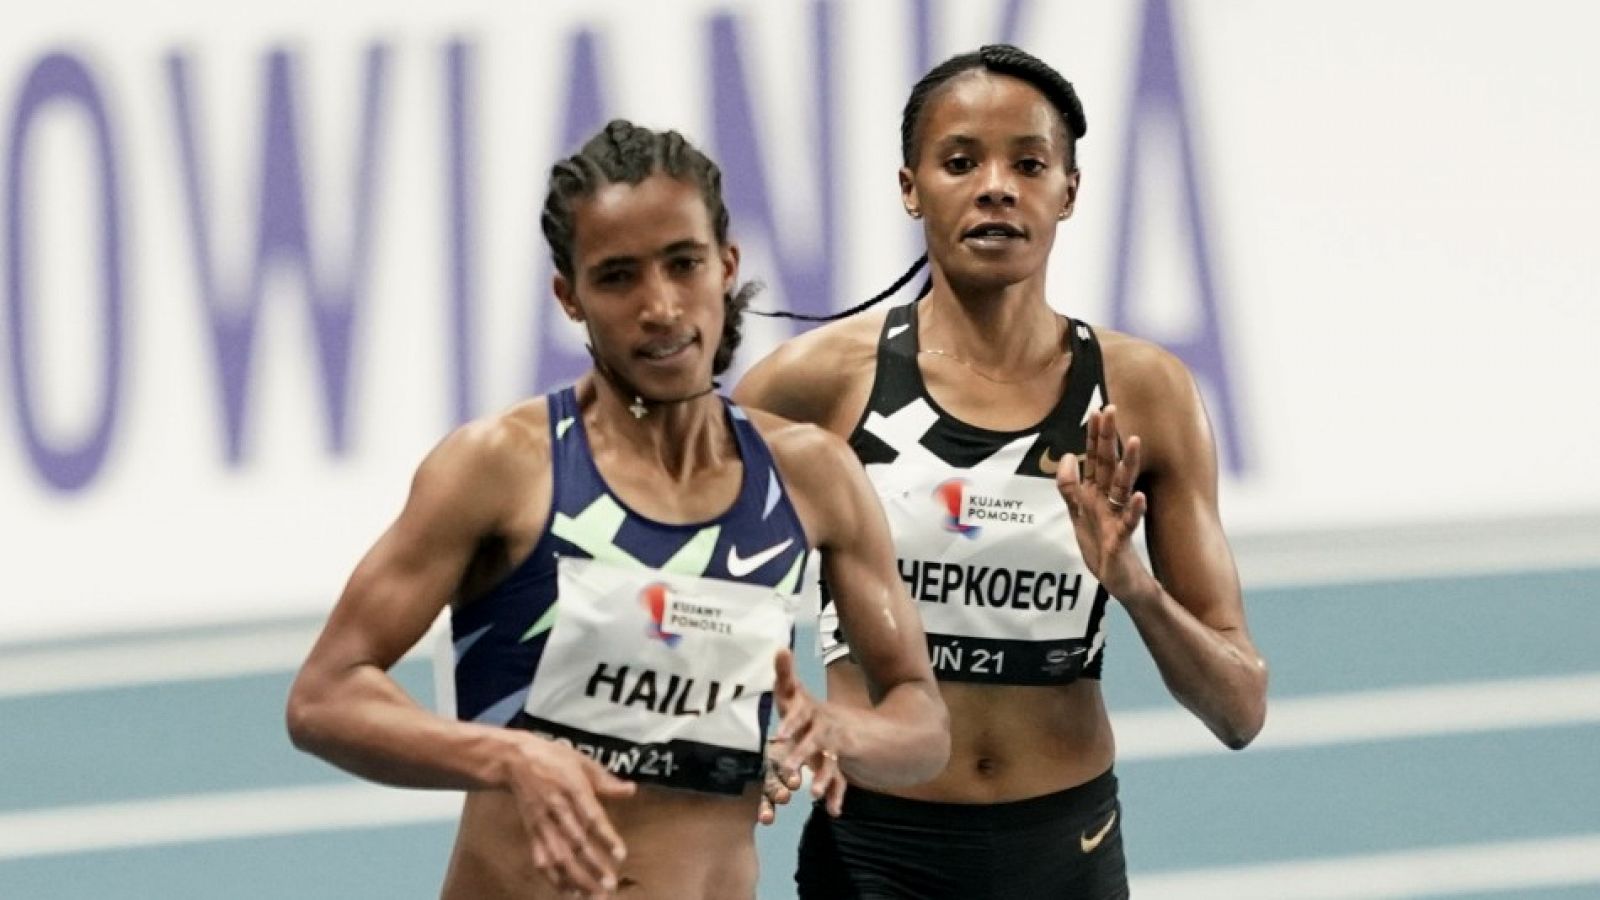 Hailu vence en los 3.000m en Torun